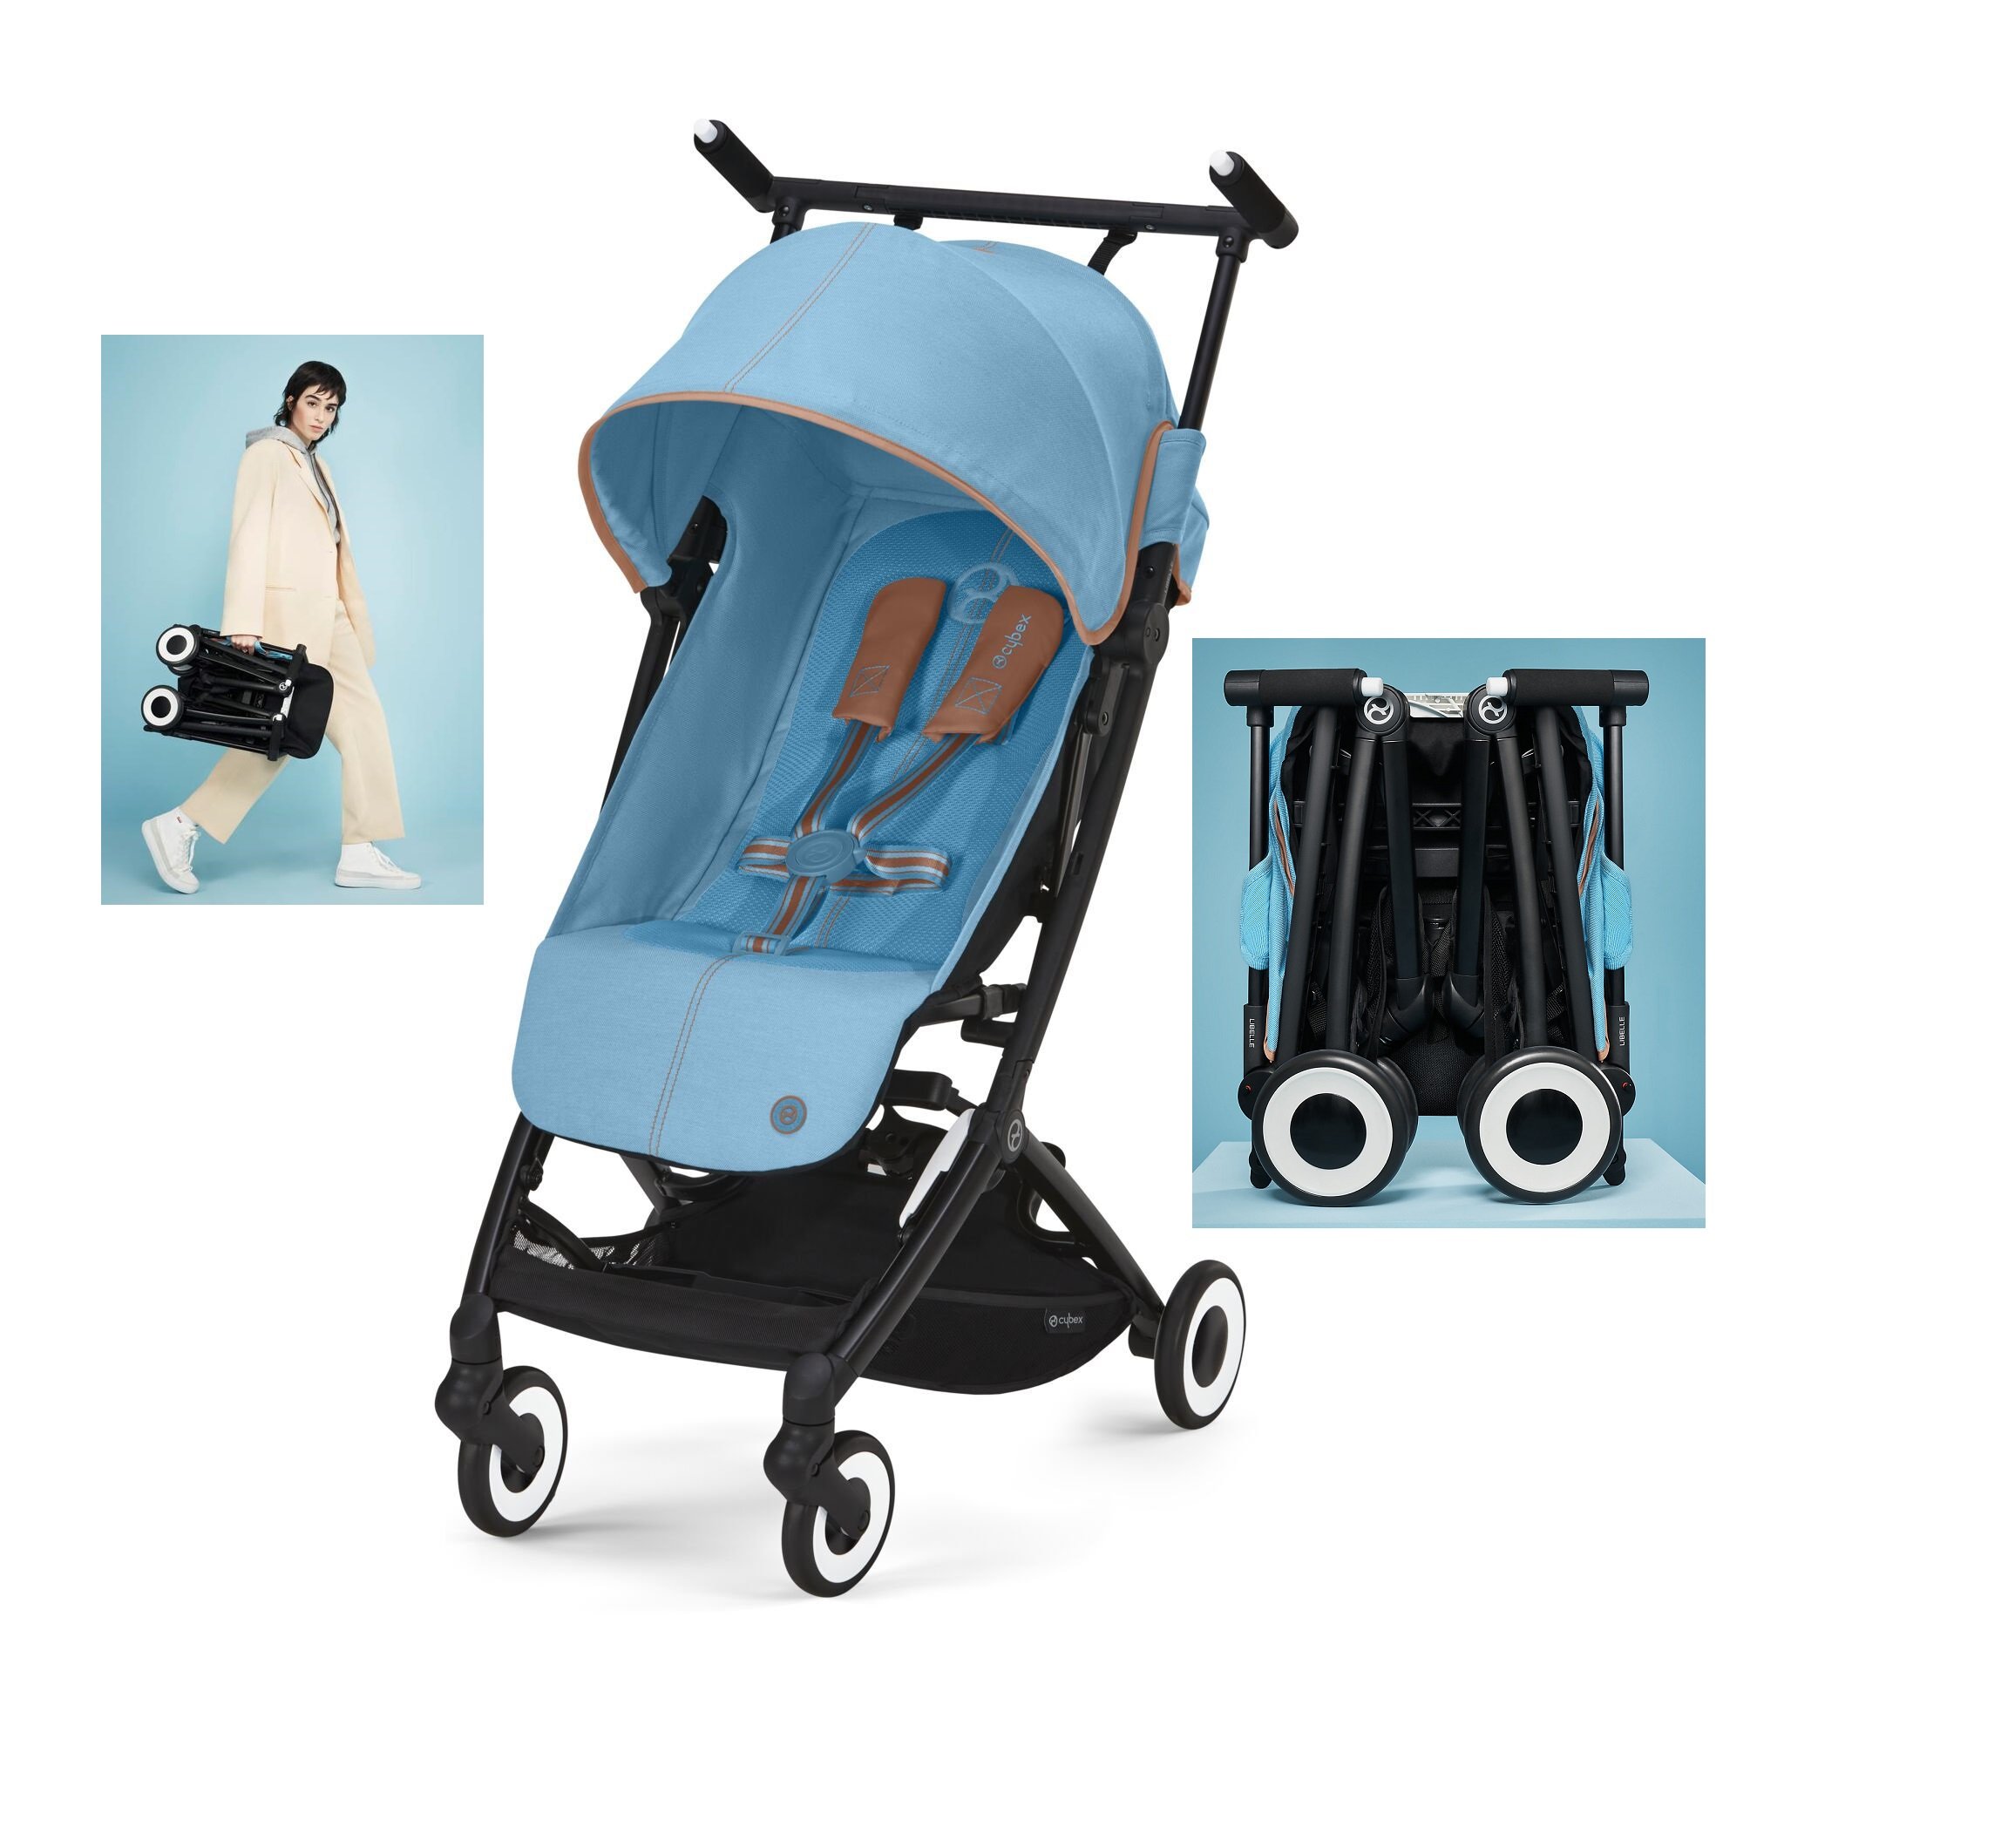  Sillas de paseo - Carritos y sillas de paseo: Bebé